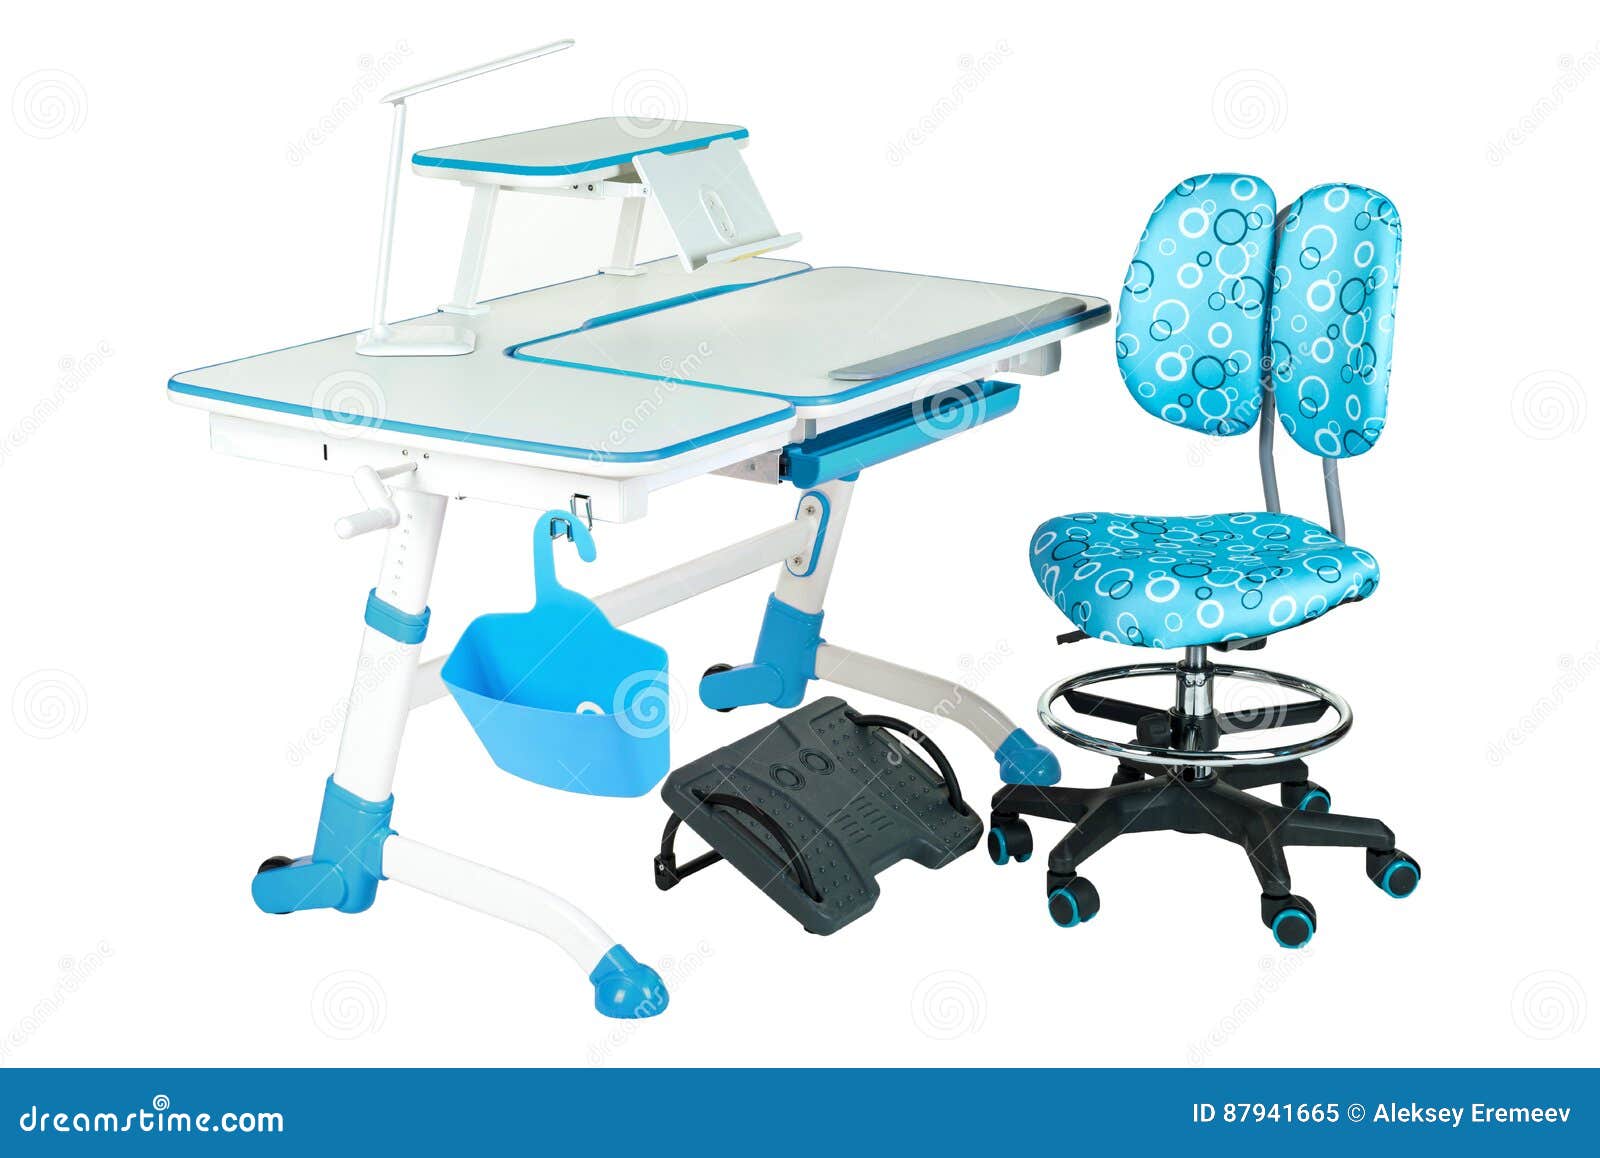 Blauwe stoel, schoolbank, blauwe mand, bureaulamp en zwarte steun onder benen. Blauwe stoel, schoollijst, blauwe mand, bureaulamp en zwarte steun onder benen op de wit geïsoleerde achtergrond